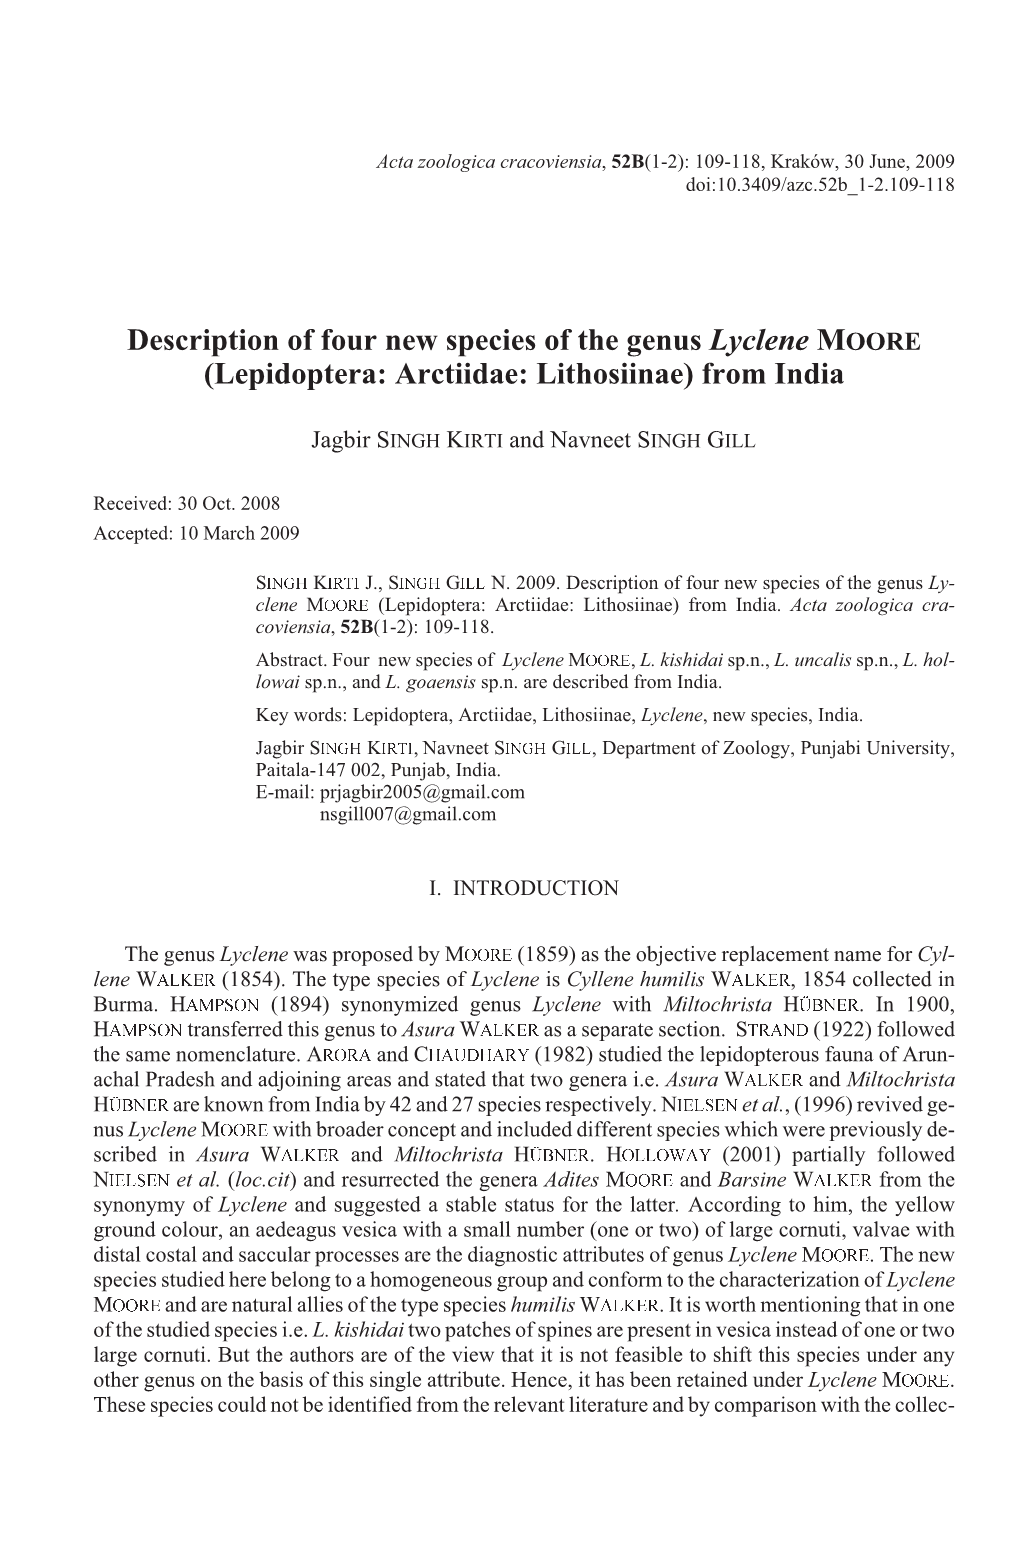 Description of Four New Species of the Genus &lt;I&gt;Lyclene&lt;/I&gt; Moore